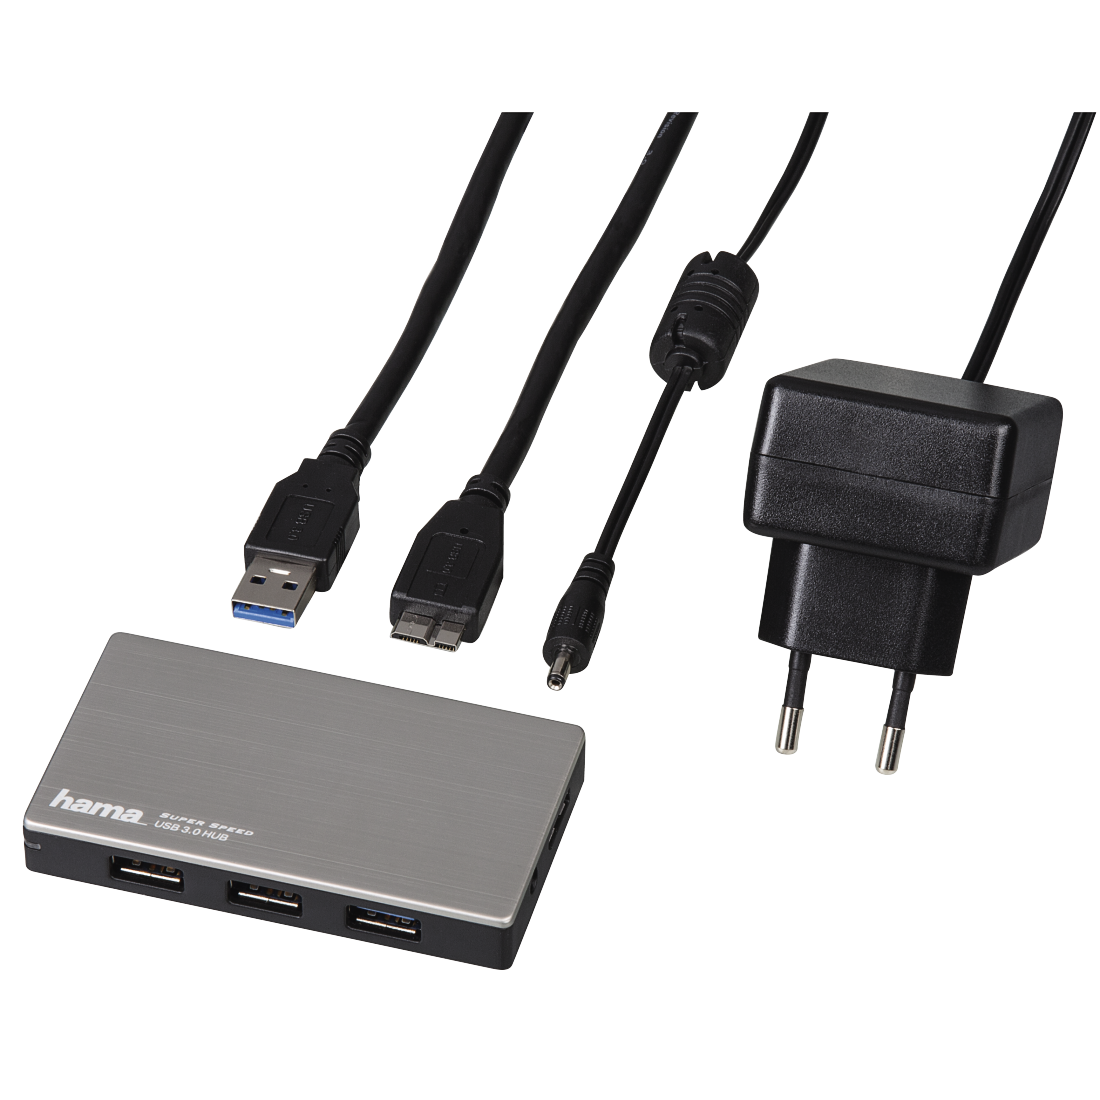 00054544 Hama USB-3.0-Hub 1:4, mit Ladefunktion und Netzteil | hama.at